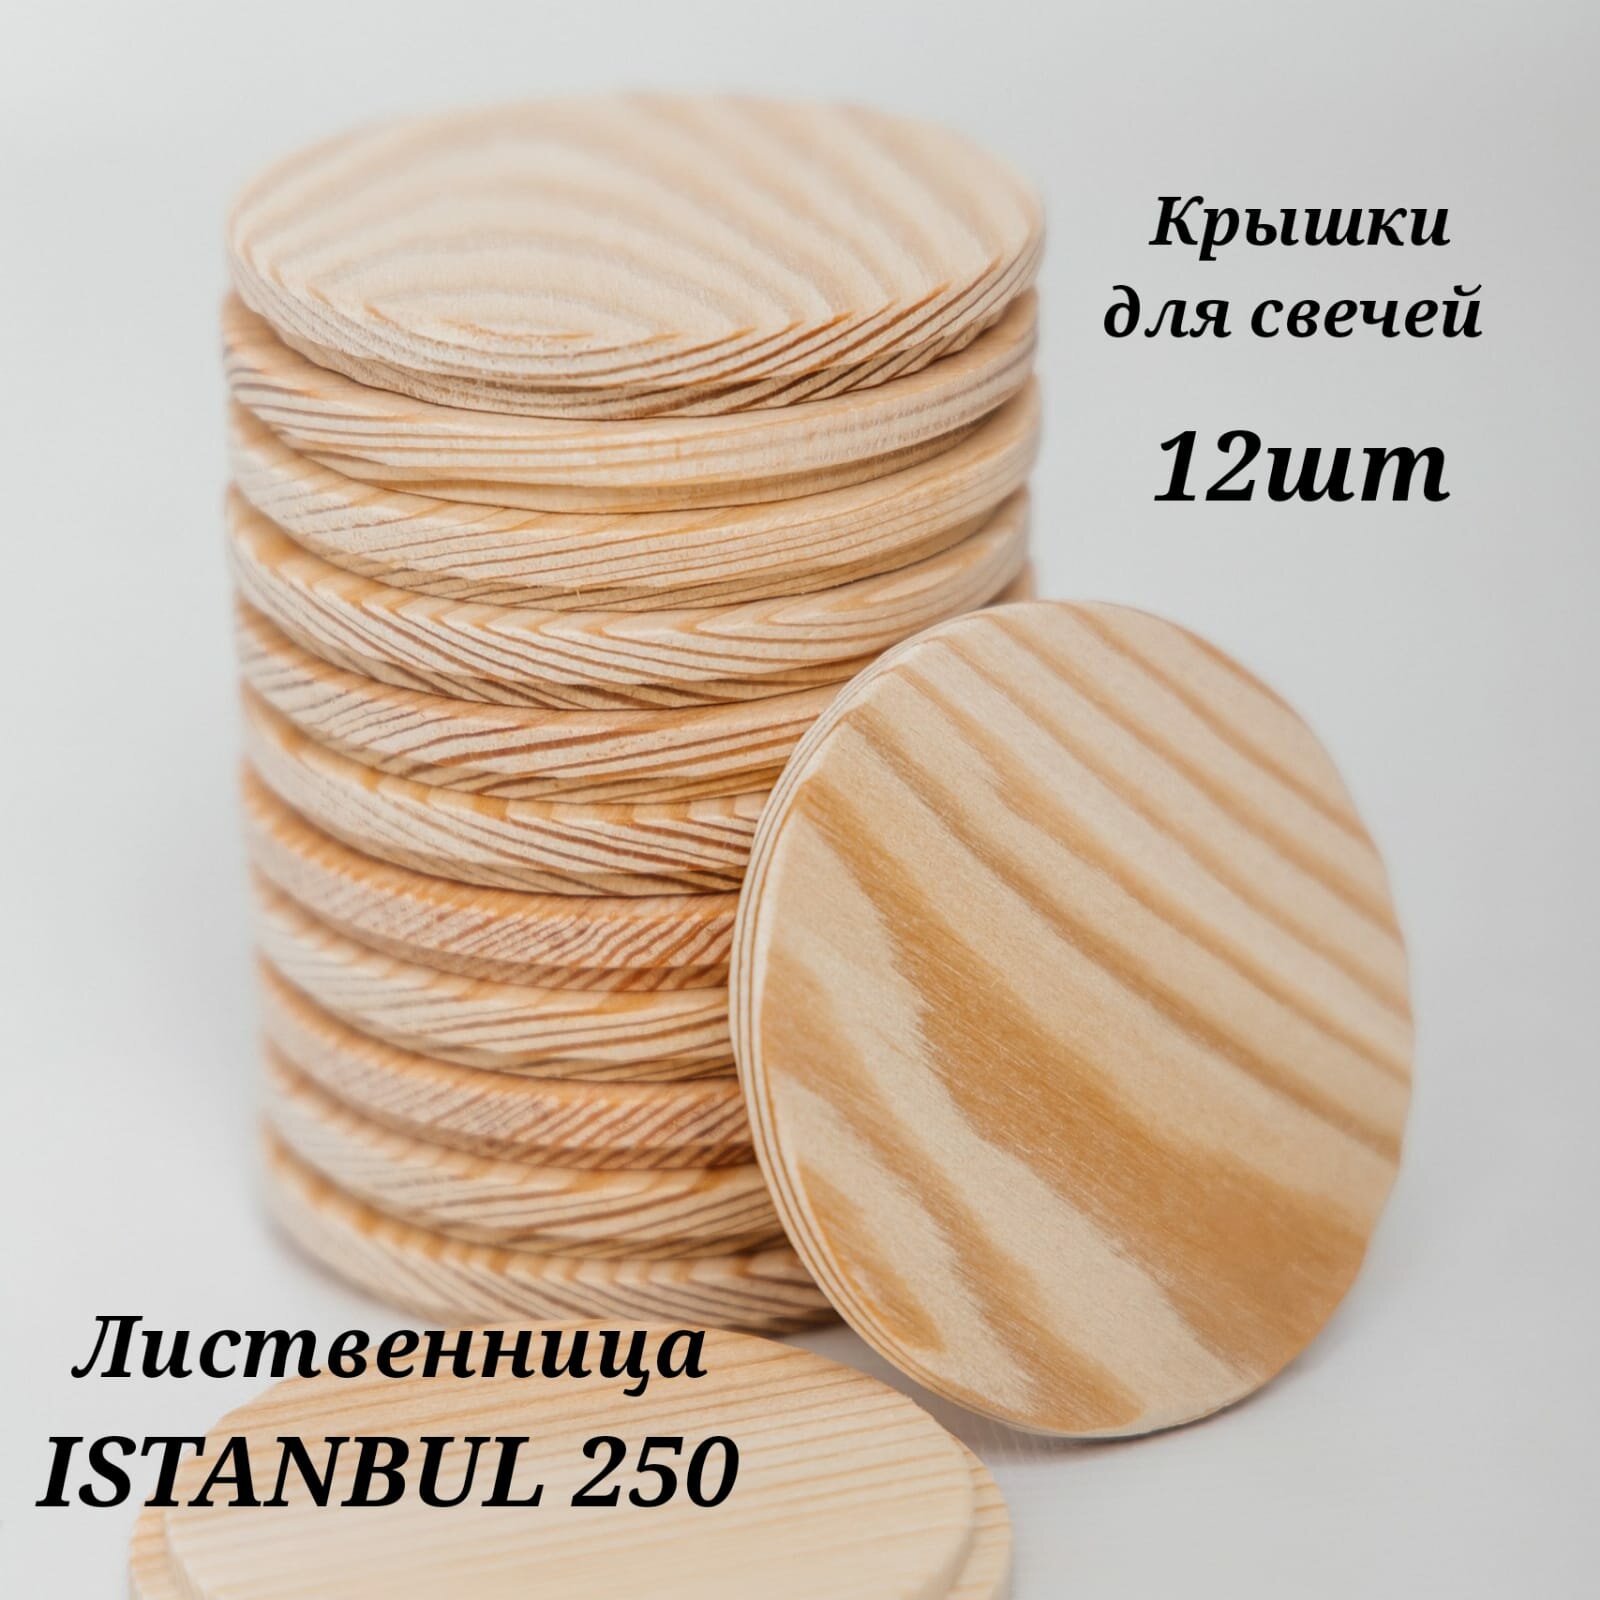 Крышки деревянные (лиственница) для свечей на стакан ISTANBUL 250 мл